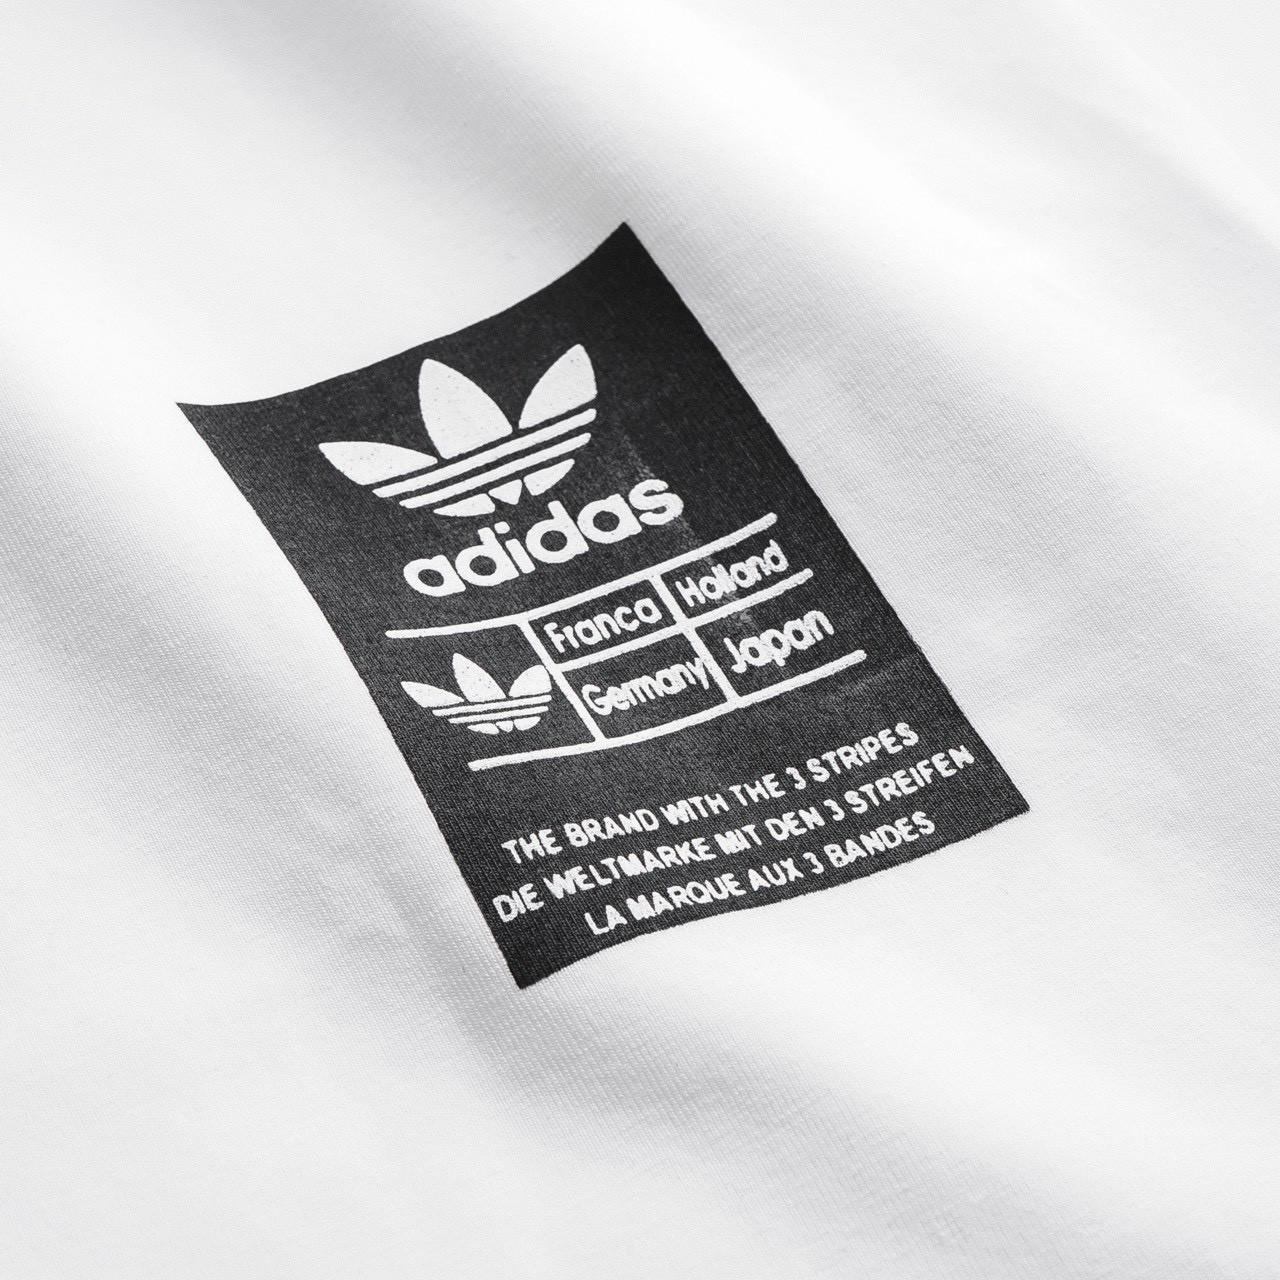 Áo Adidas lưng in bảng chữ 3